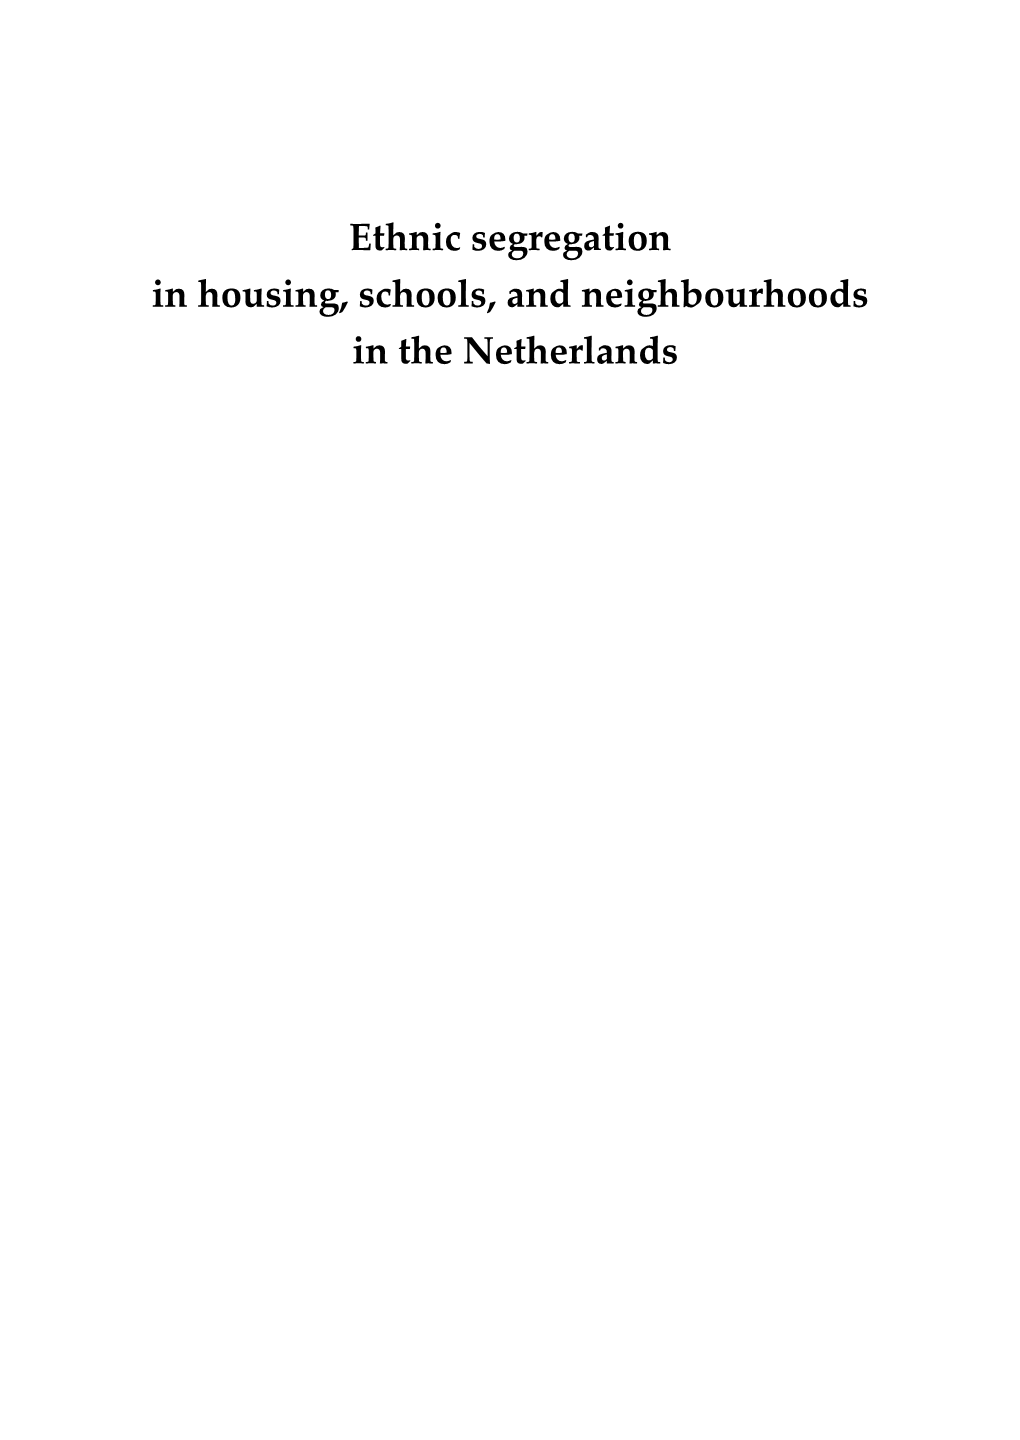 Ethnic Segregation in Housing, Schools, and Neighbourhoods in the Netherlands